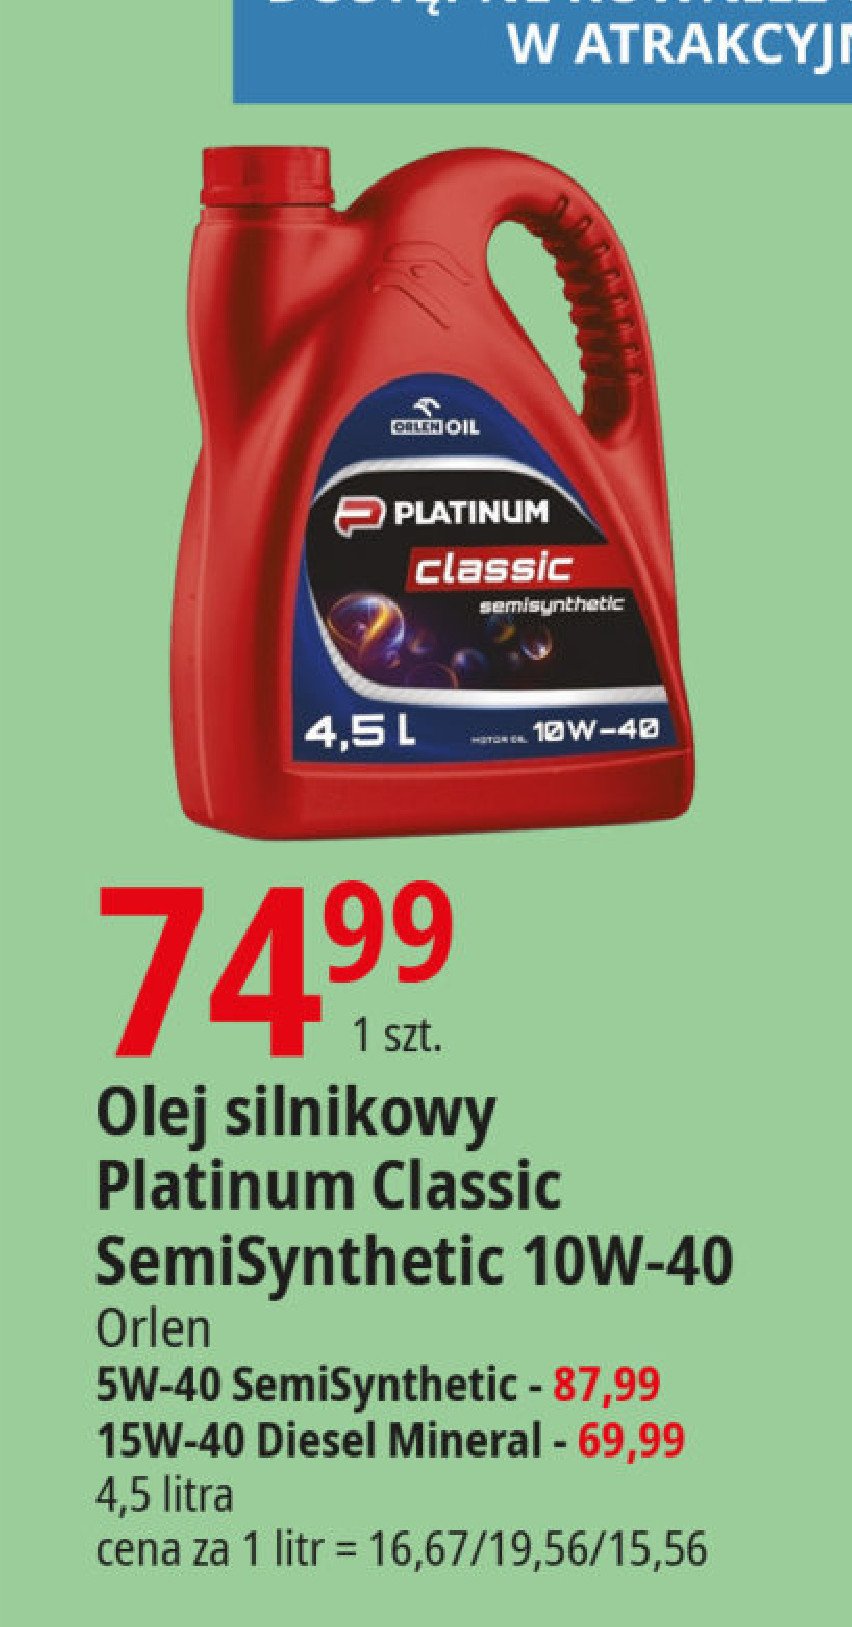 Olej silnikowy classic semisynthetic 5w-40 Orlen oil promocja